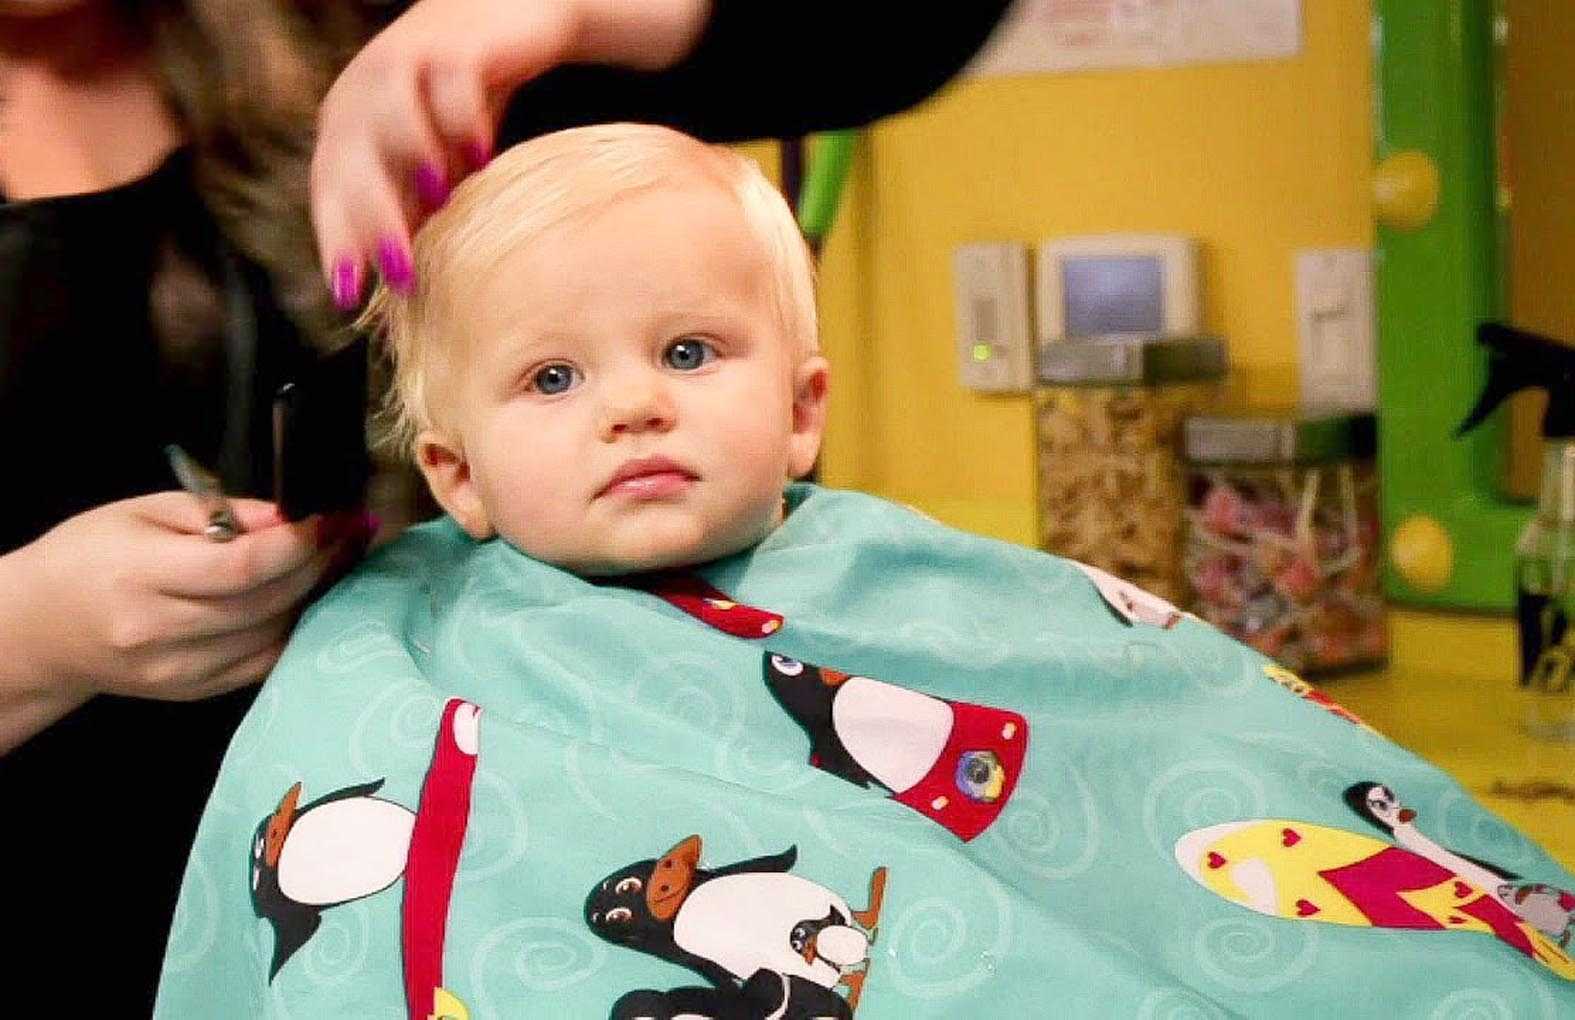 Как подстричь ребенка в 4 месяца